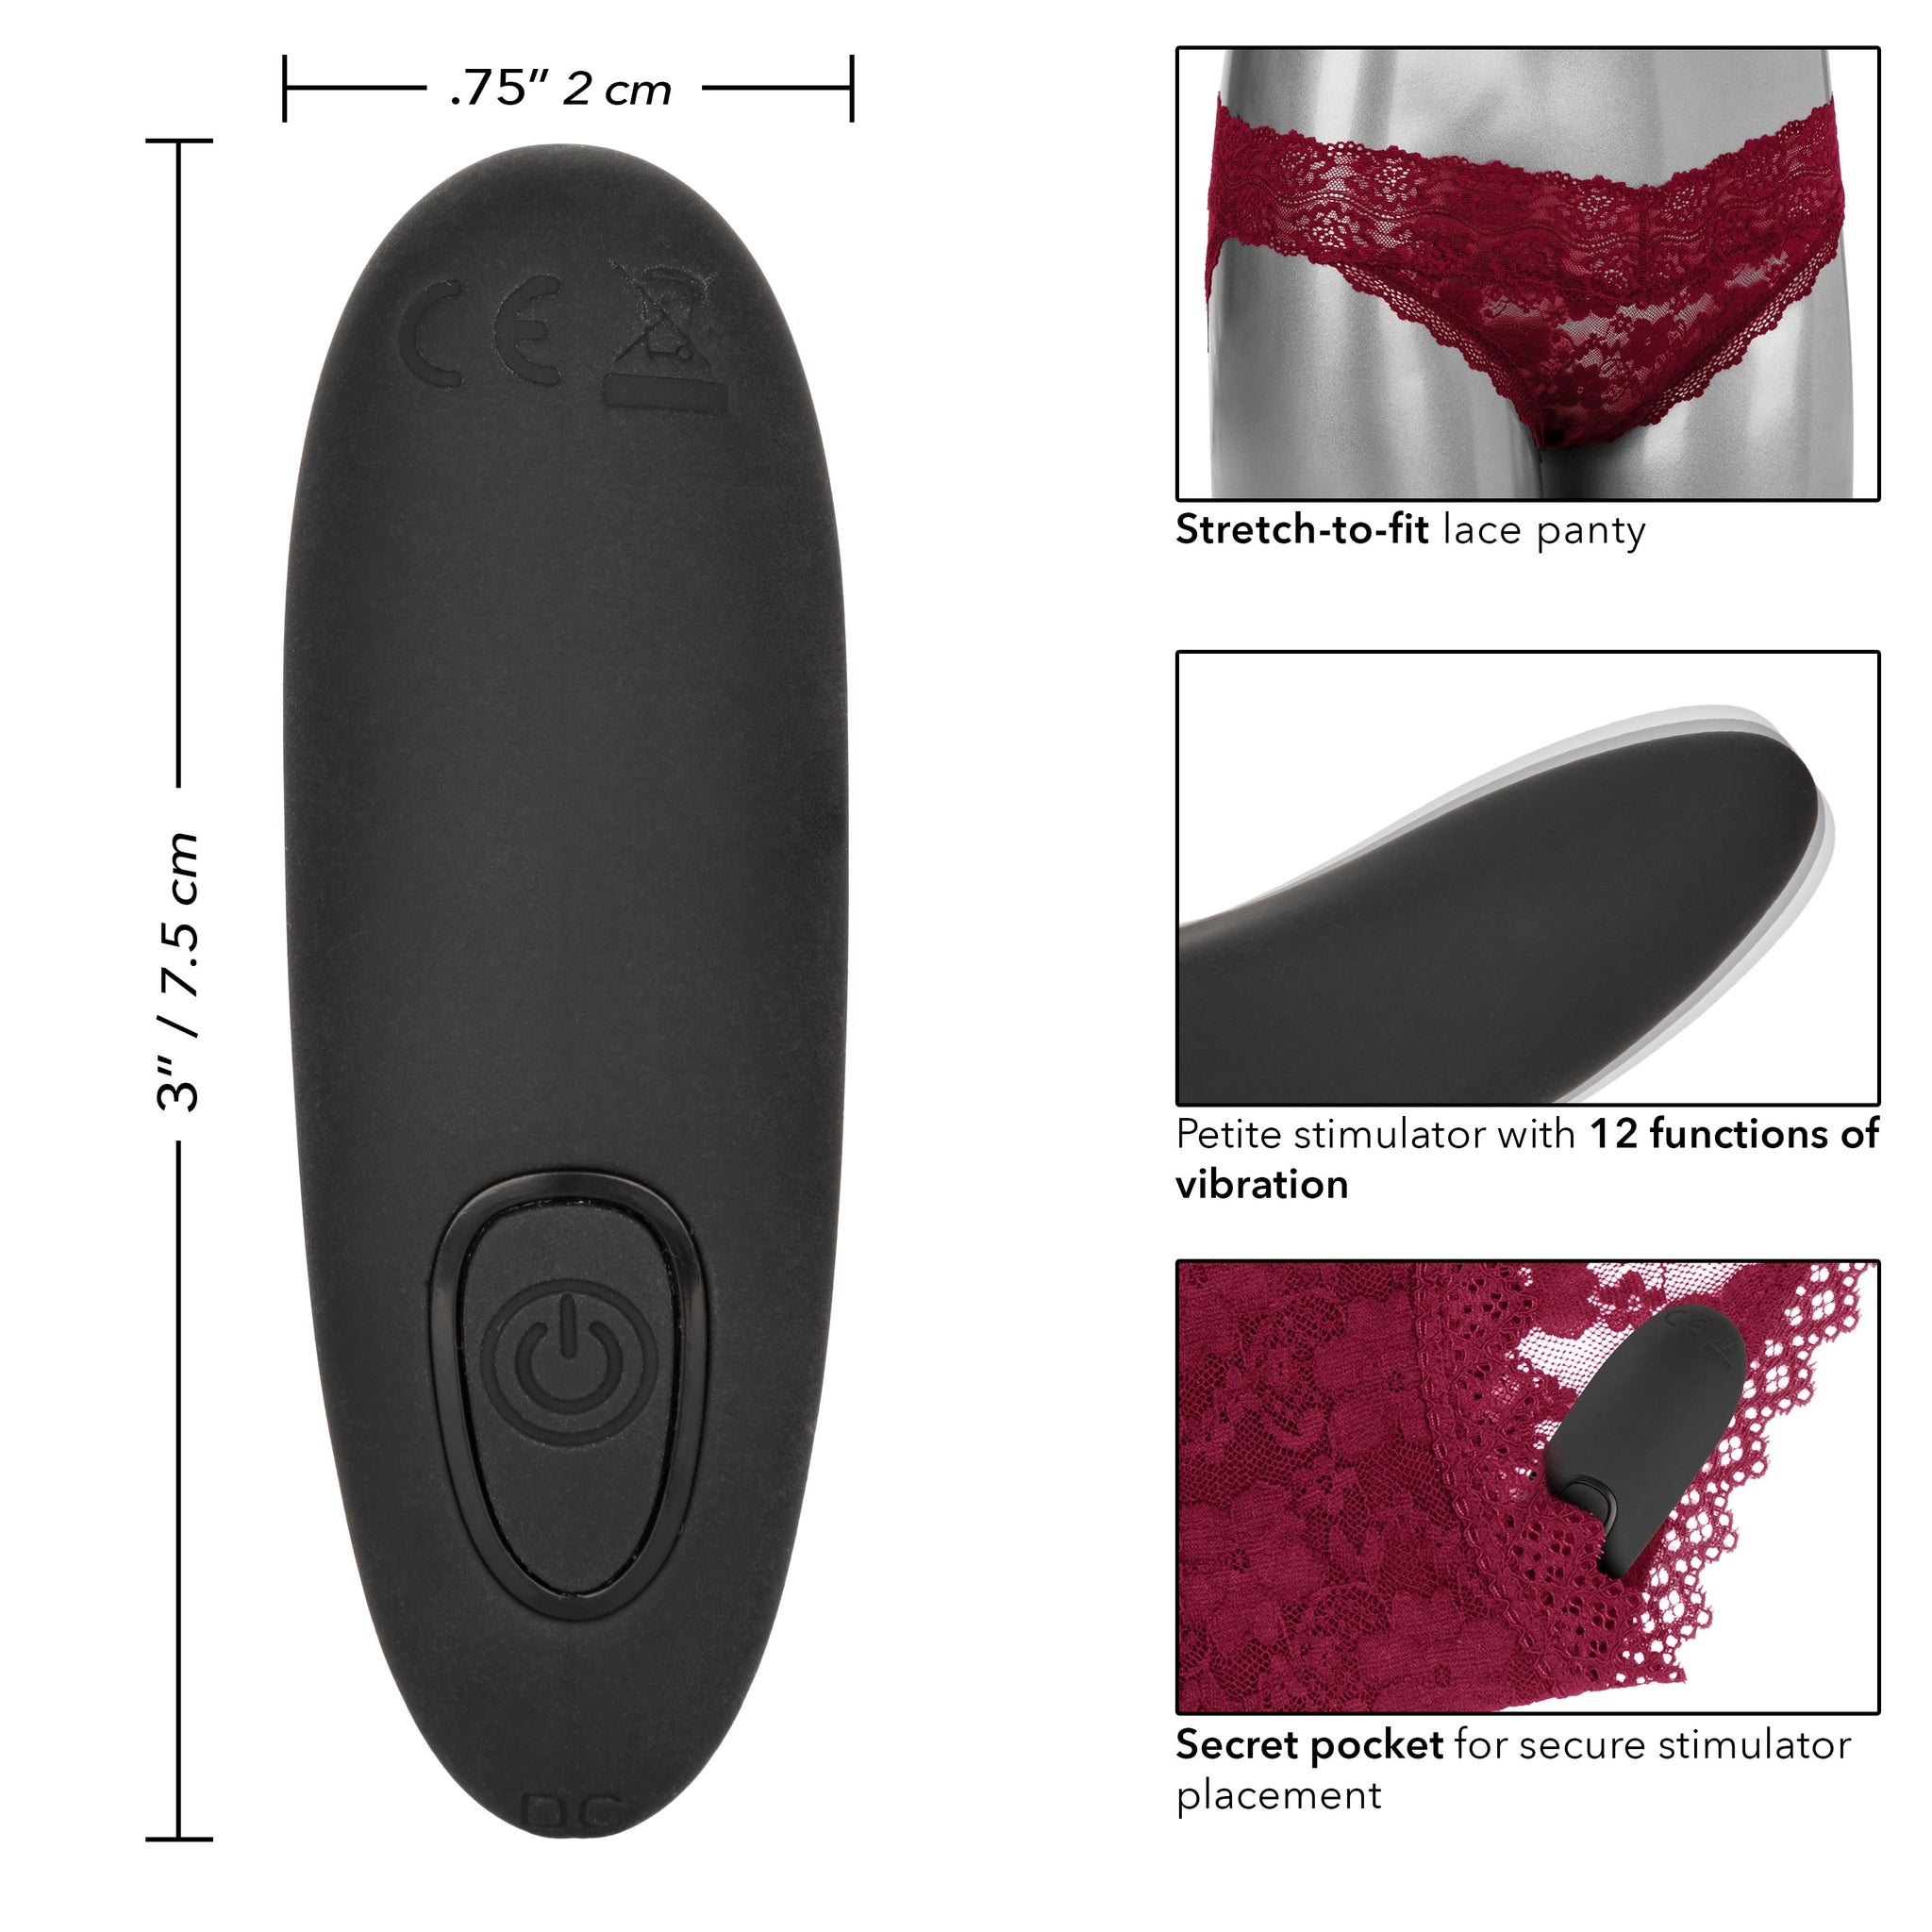 Remote Control Lace Panty Set - L/ XL - Burgundy